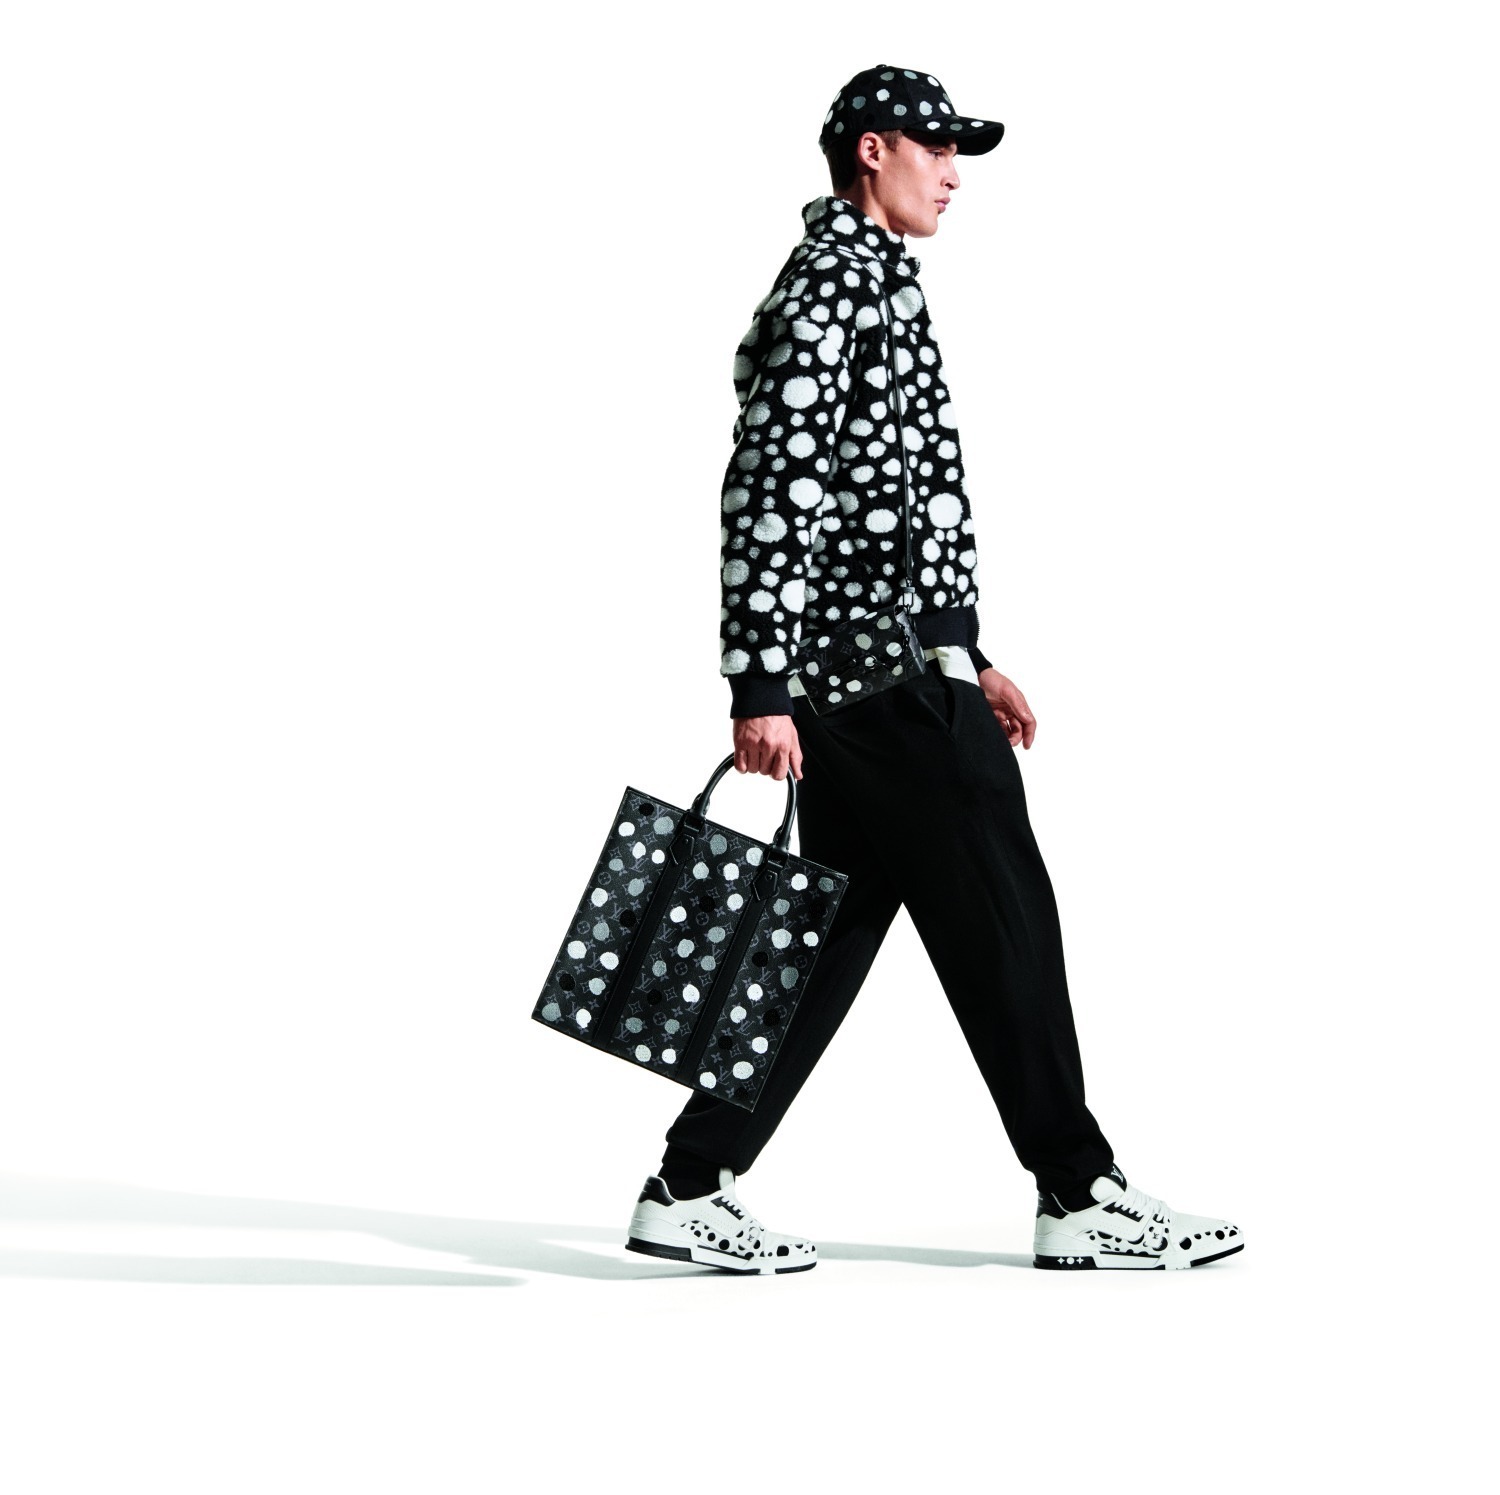 Louis Vuitton x Yayoi Kusama 2023 Ad Campaign